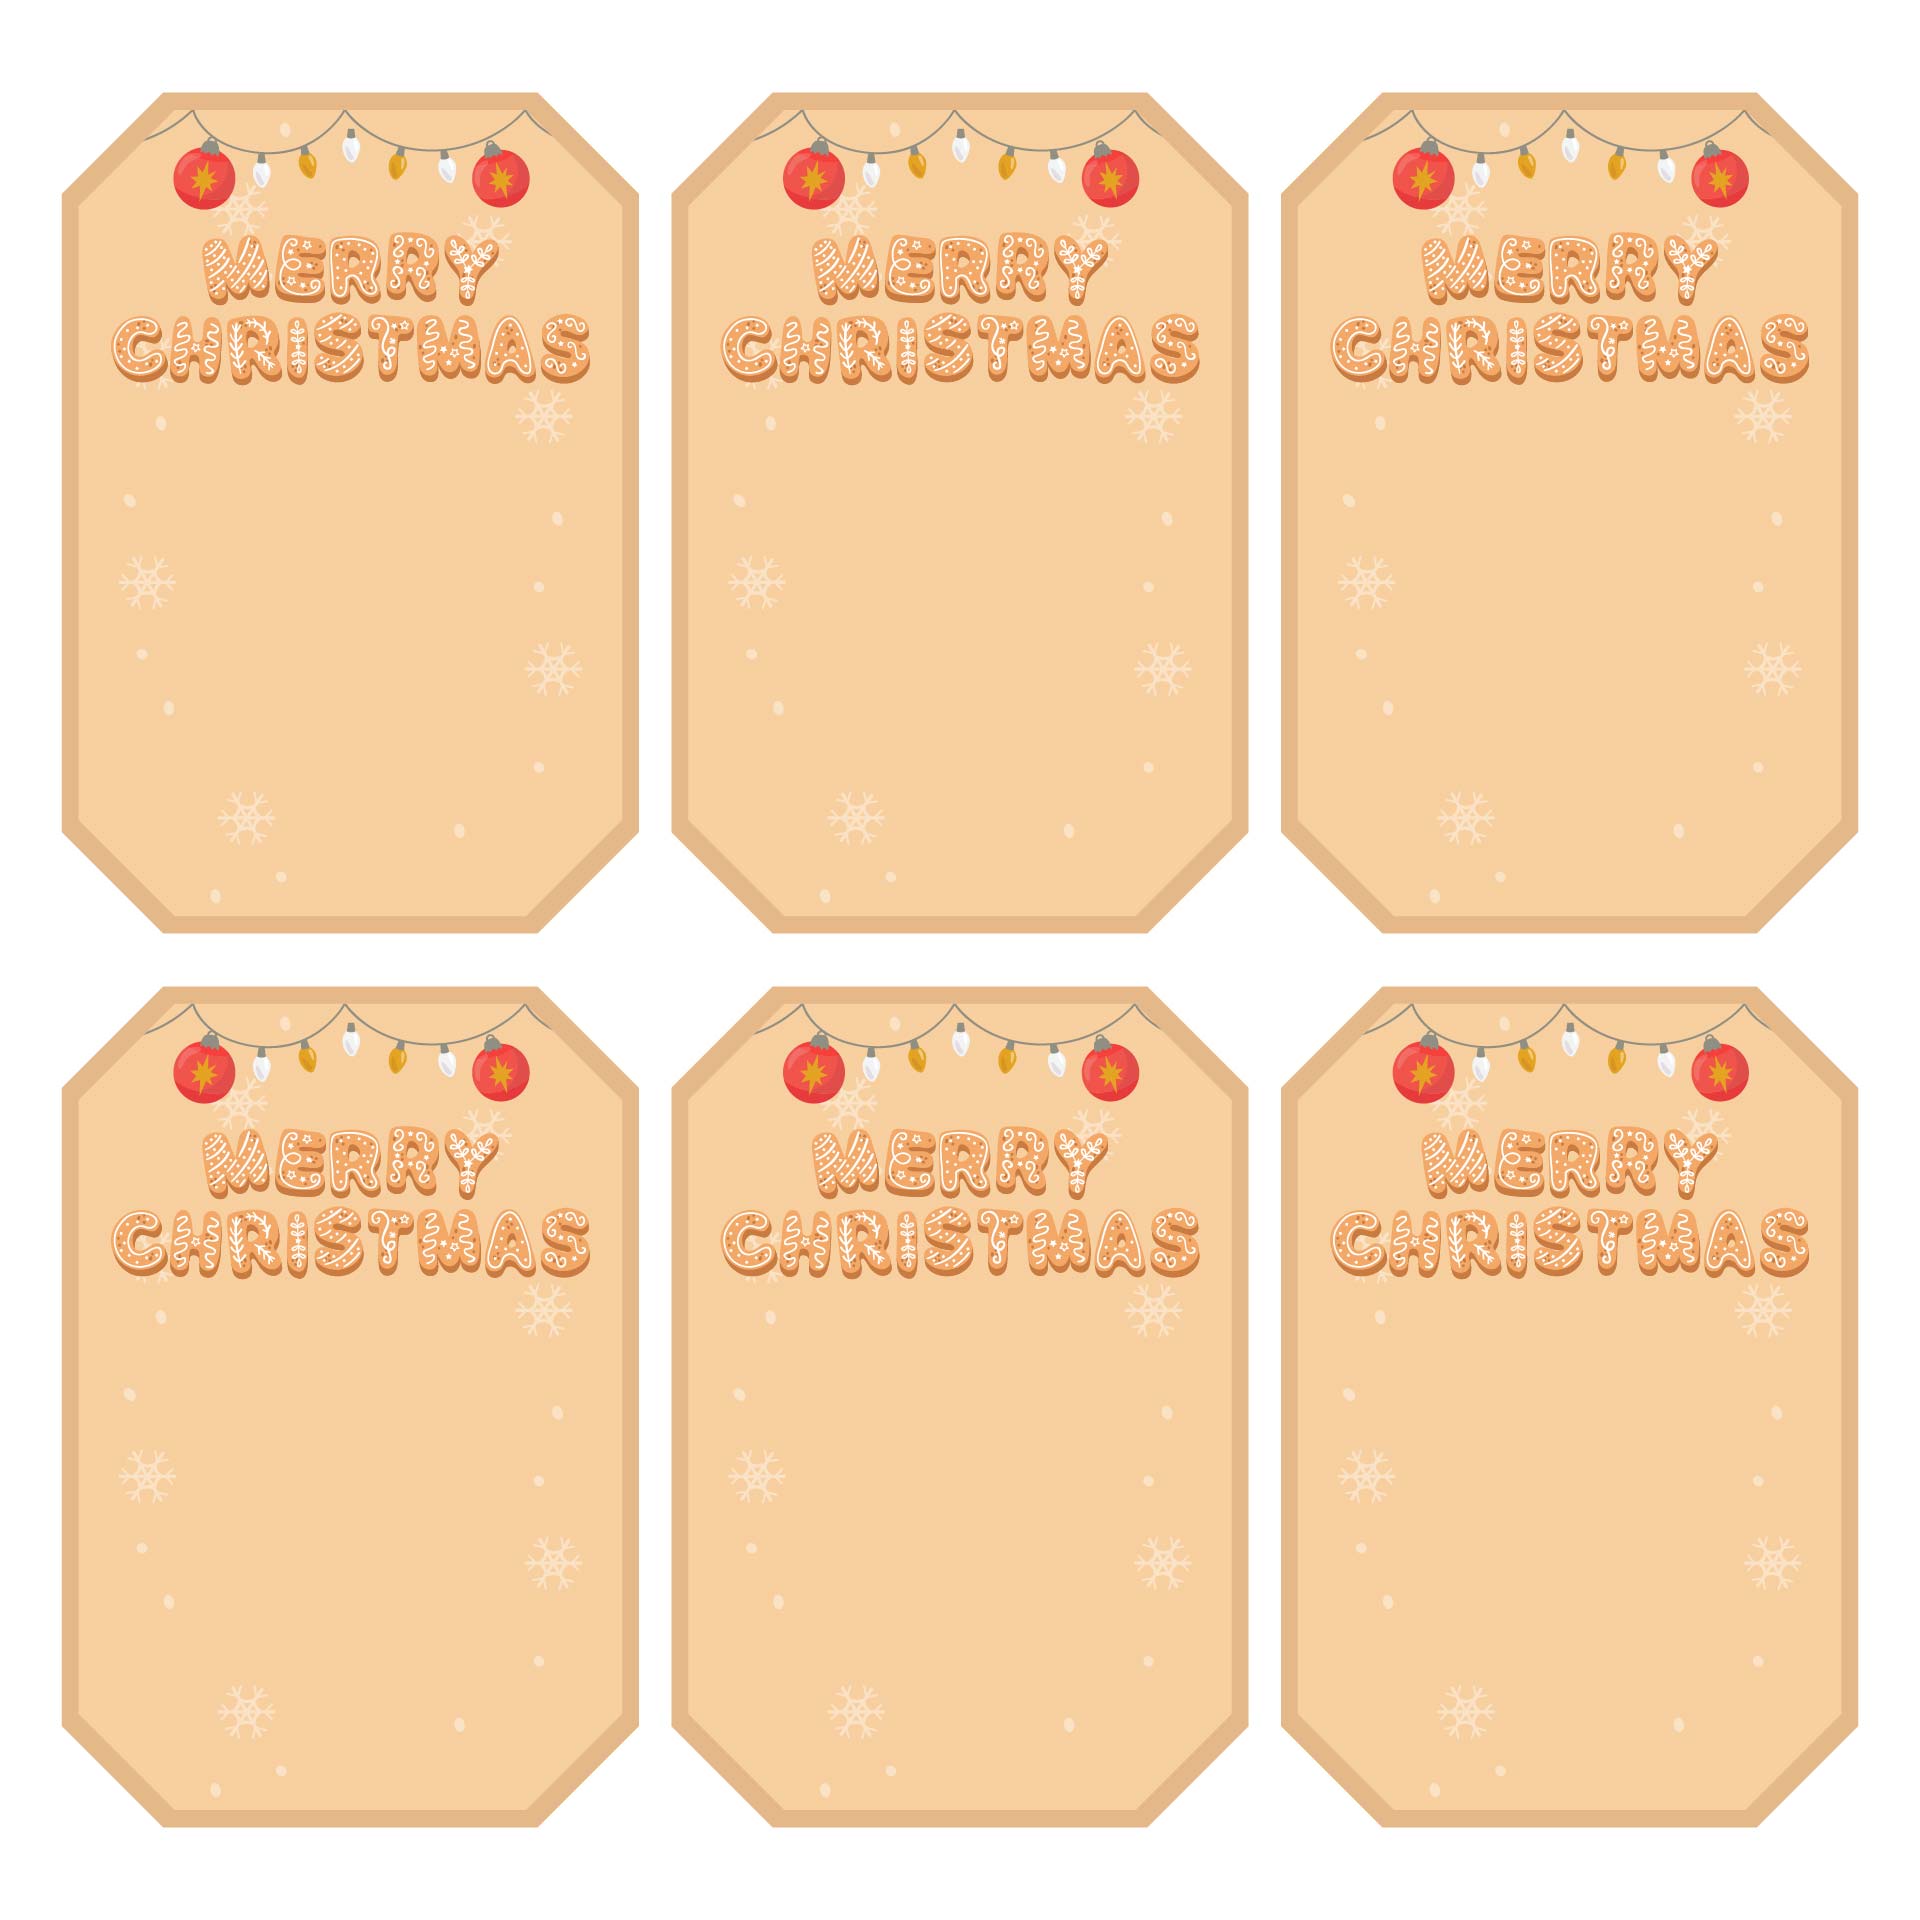 Printable Christmas Tags Holiday Gifts